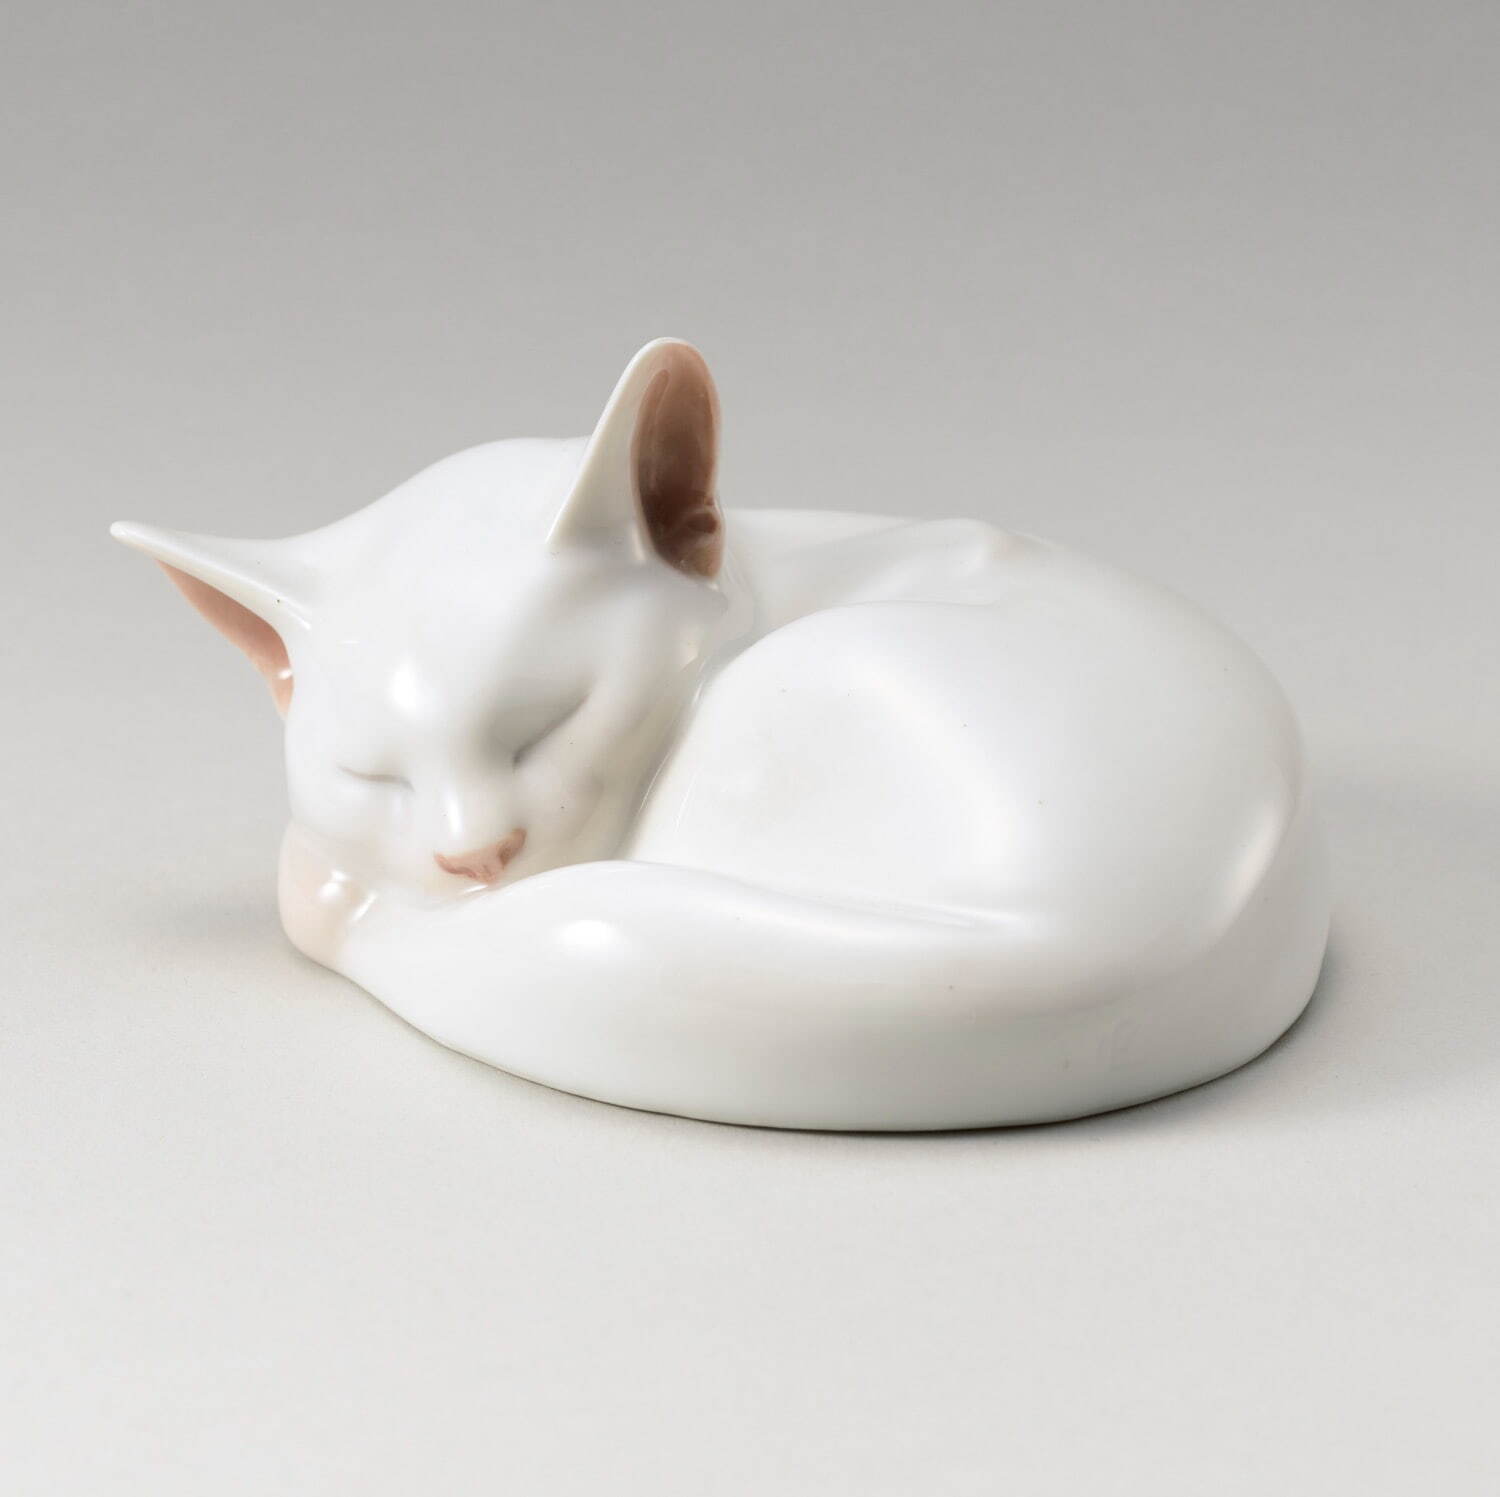 《眠り猫置物》 1902-22年 原型：エリック・ニールセン
ロイヤル コペンハーゲン 塩川コレクション